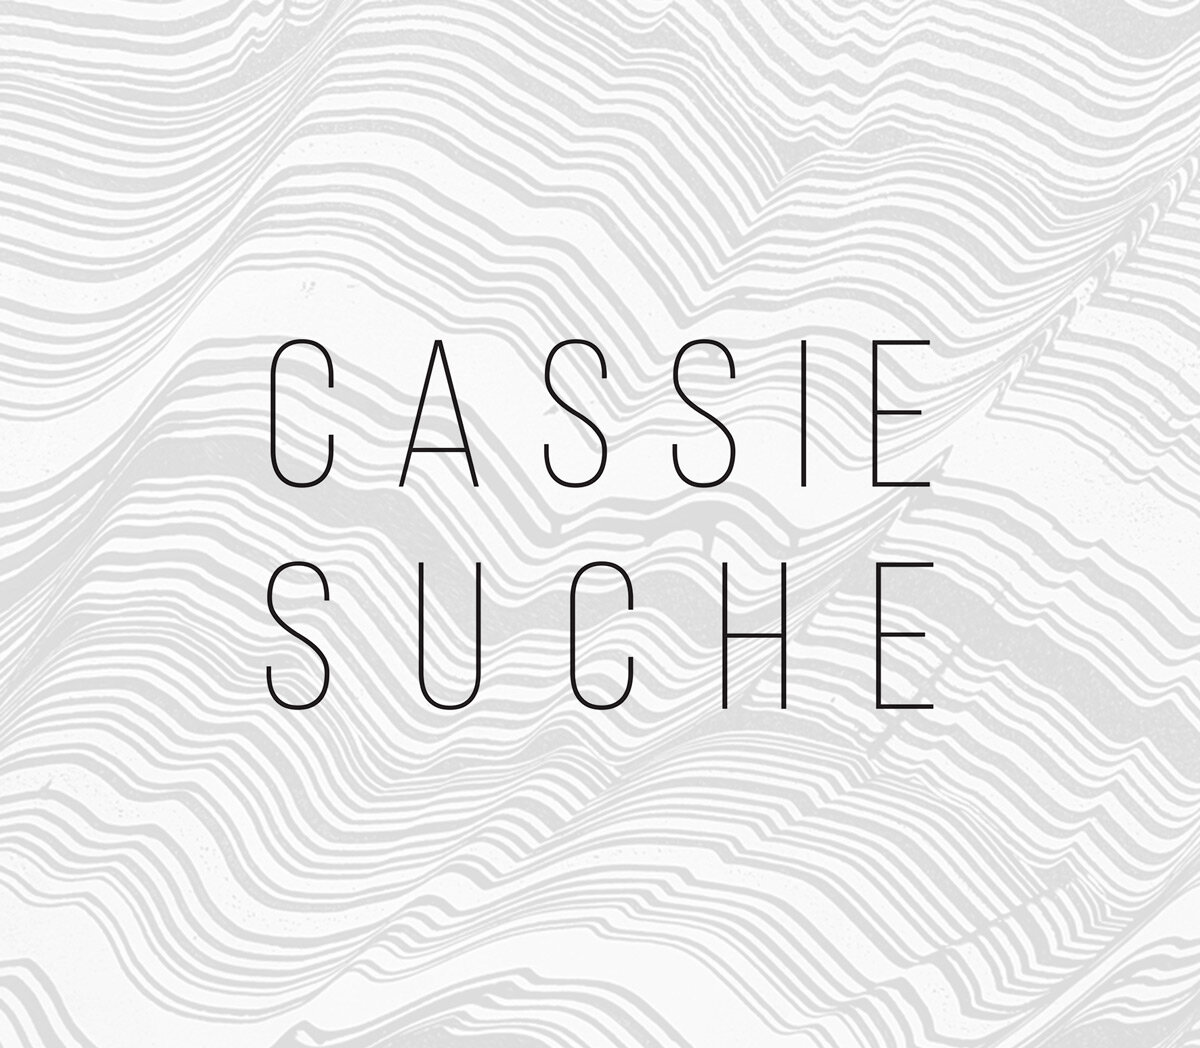 Cassie Suche